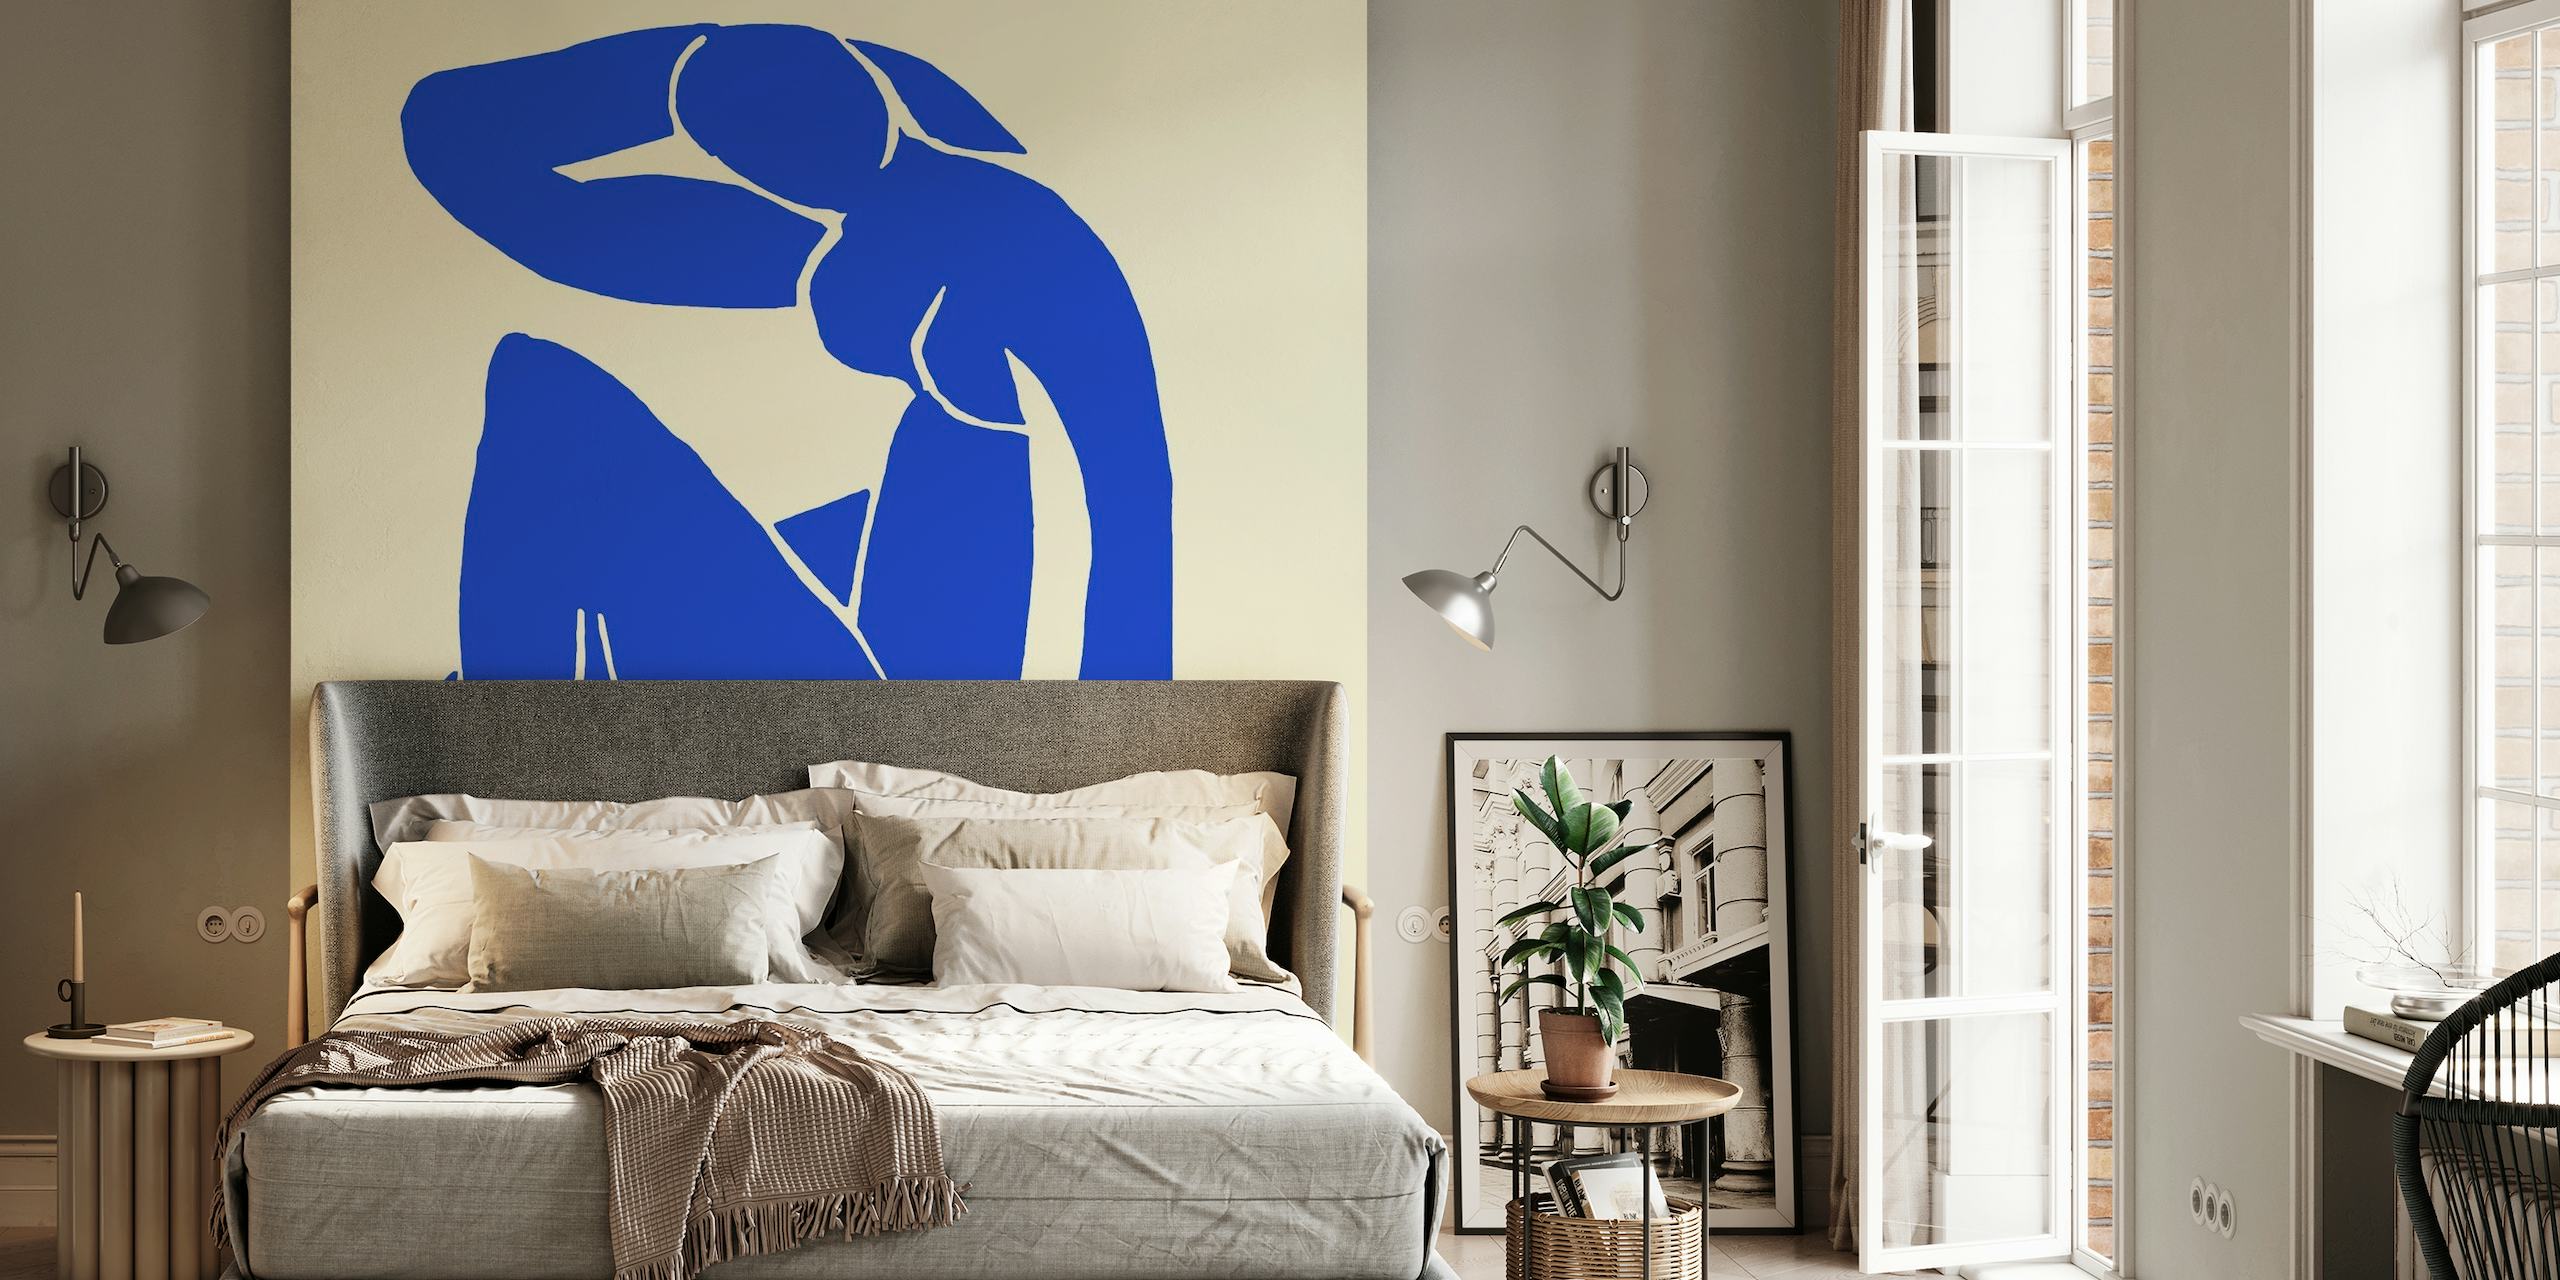 Abstrakt blå figurtapet inspirerad av Matisses konststil